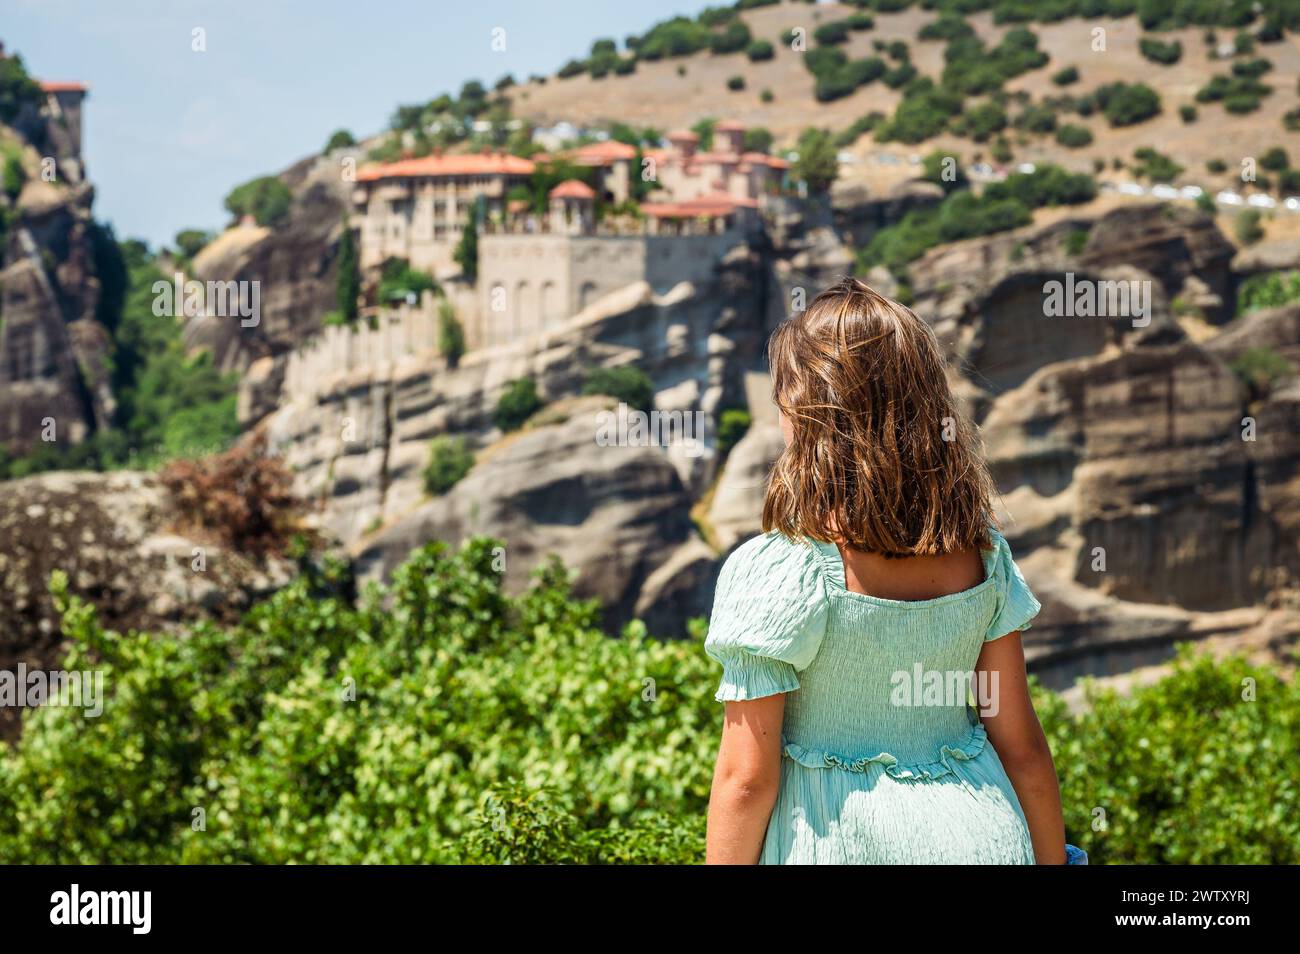 Portrait d'enfants visitant le célèbre monastère des Météores en Grèce. Fille regarde le célèbre monastère des Météores par une journée d'été ensoleillée. Banque D'Images